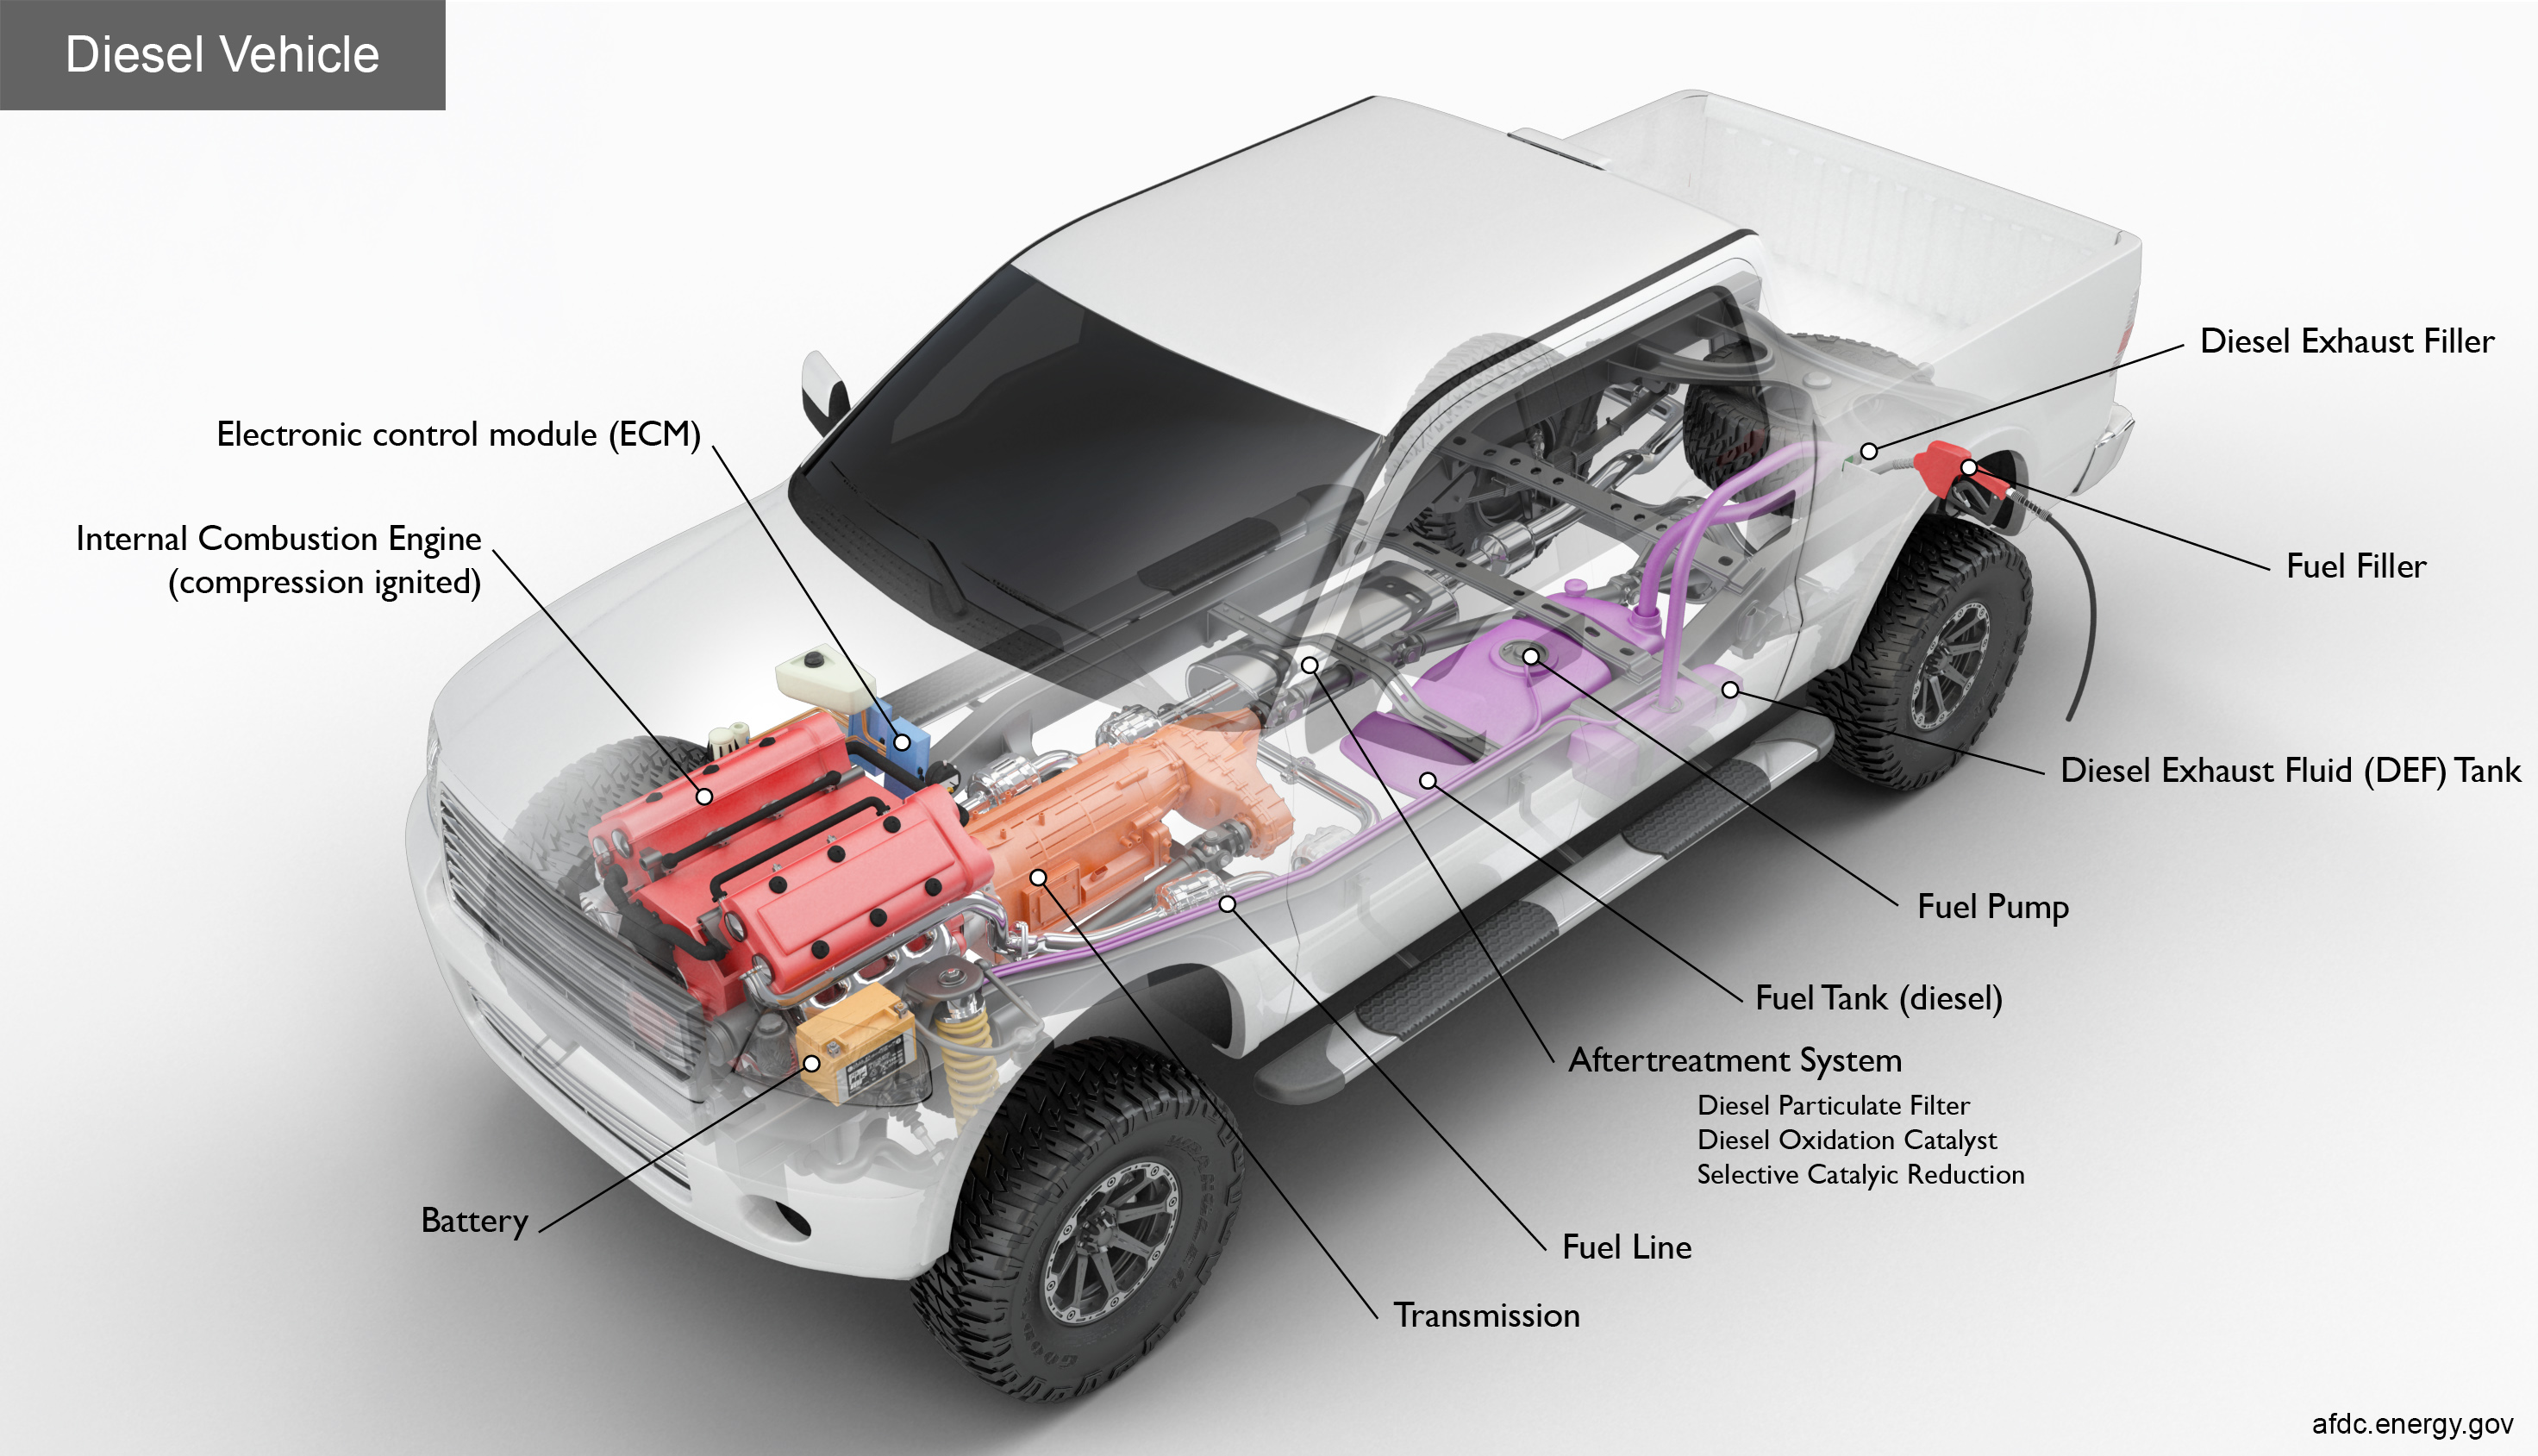 Alternative Fuels Data Center: How Do Diesel Vehicles Work?